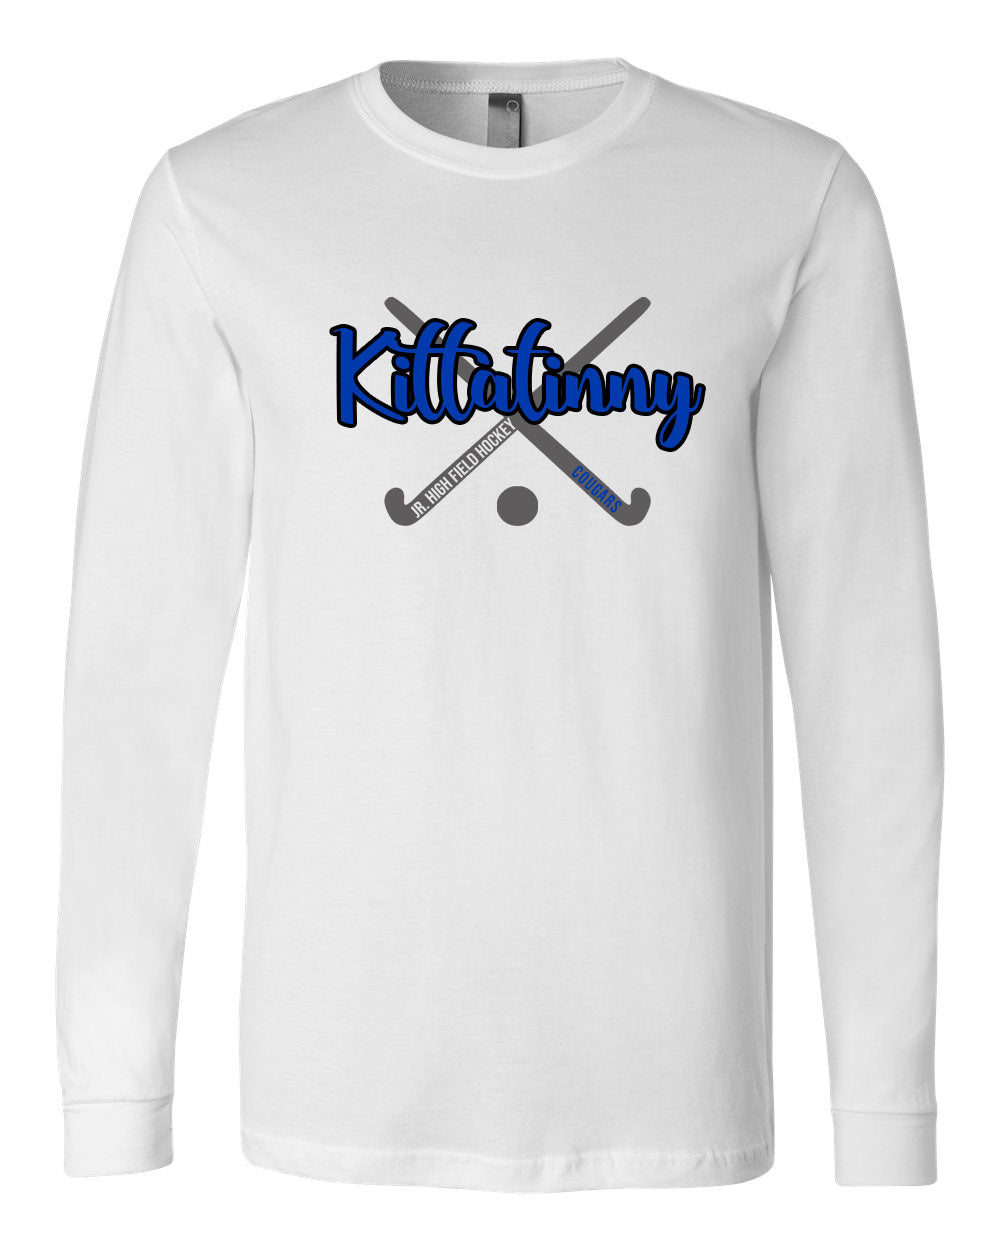 Kittatinny Jr Field Hockey Design 2 Long Sleeve Shirt